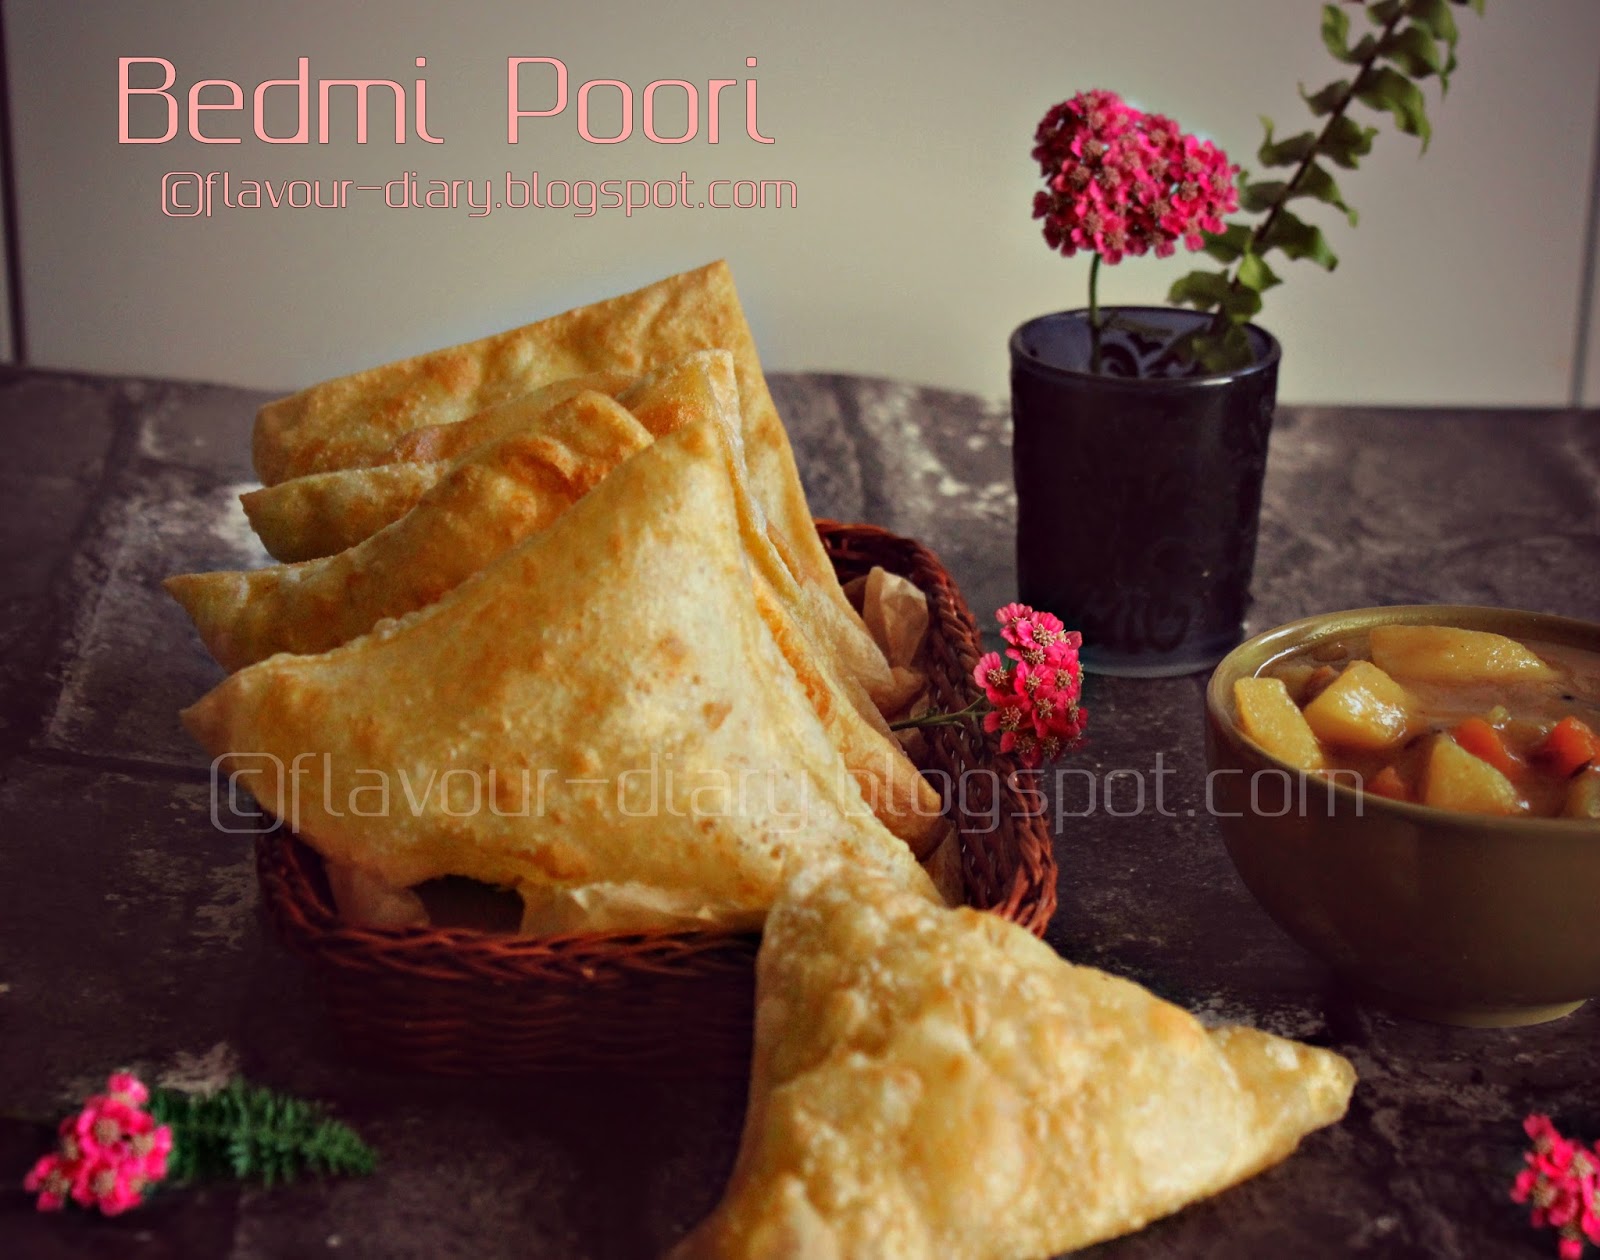 Bedmi Poori recipe